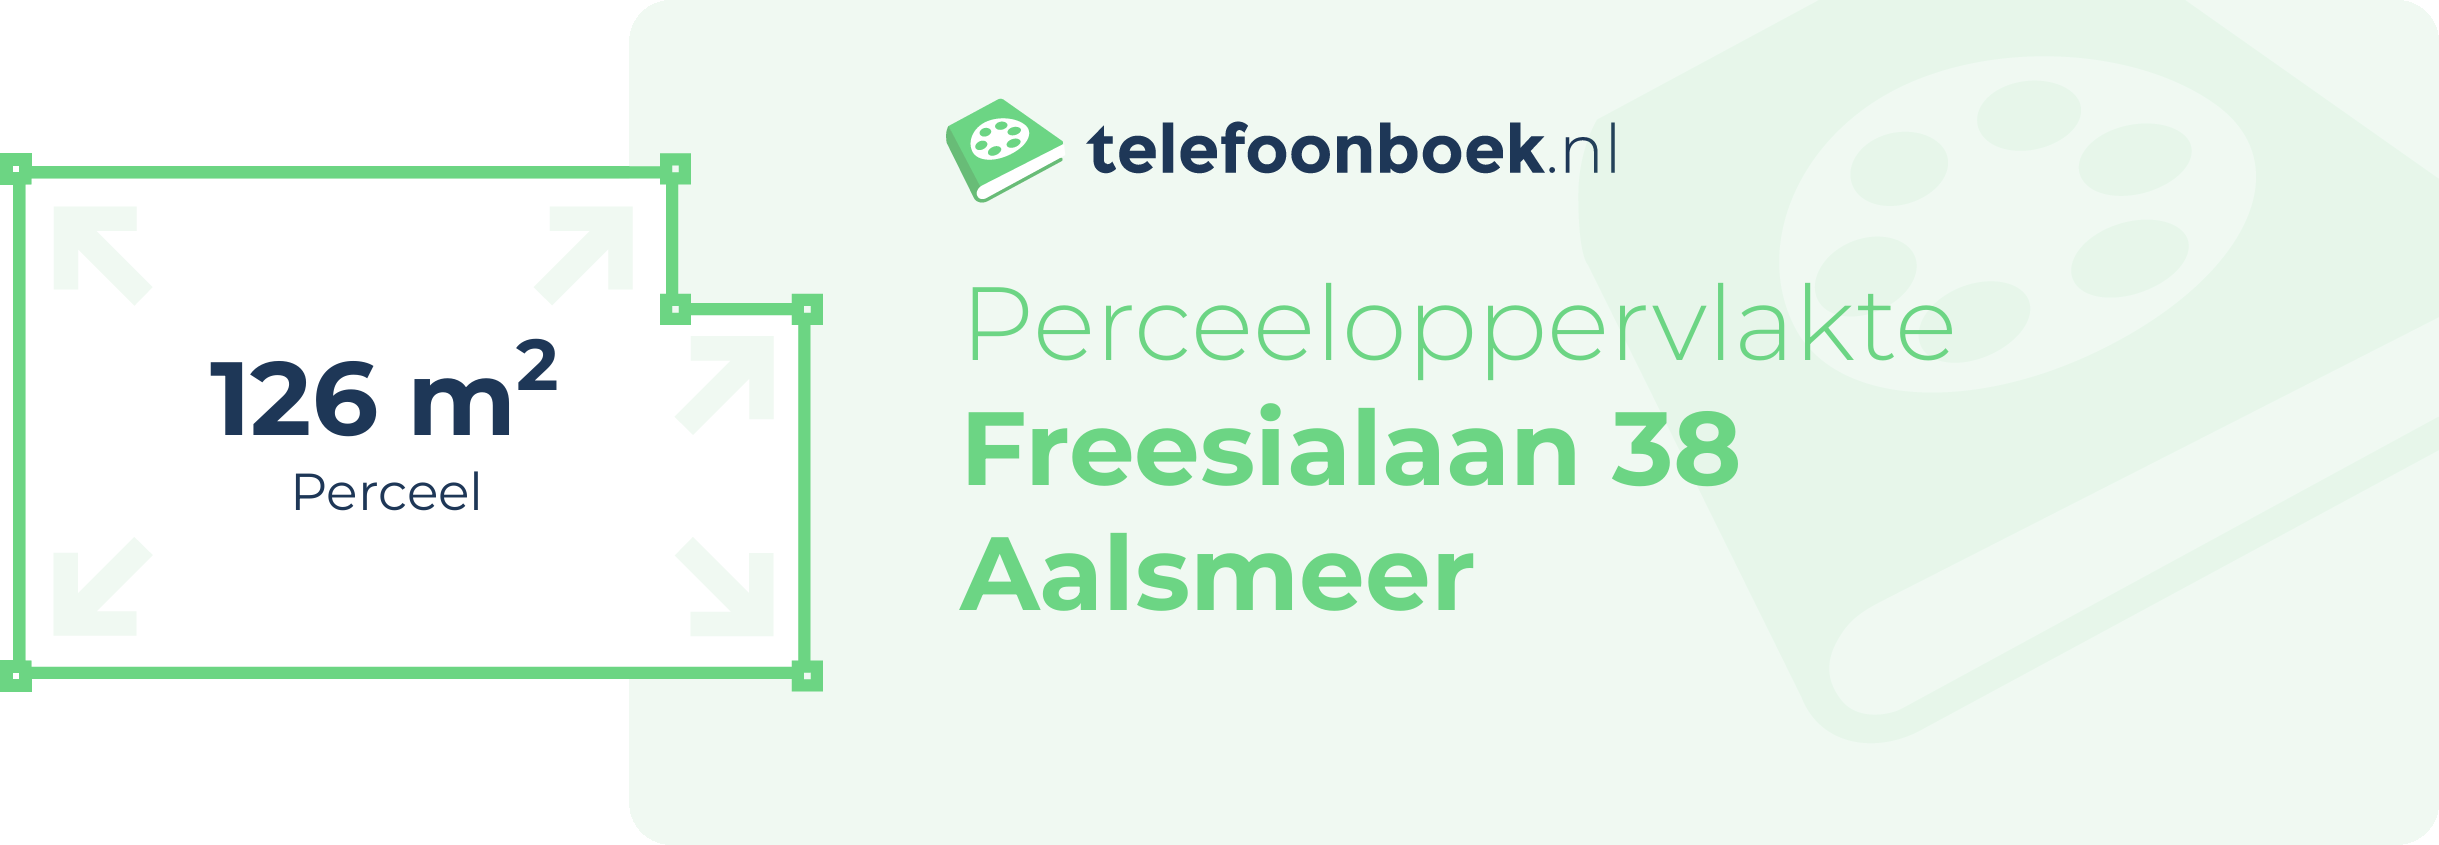 Perceeloppervlakte Freesialaan 38 Aalsmeer